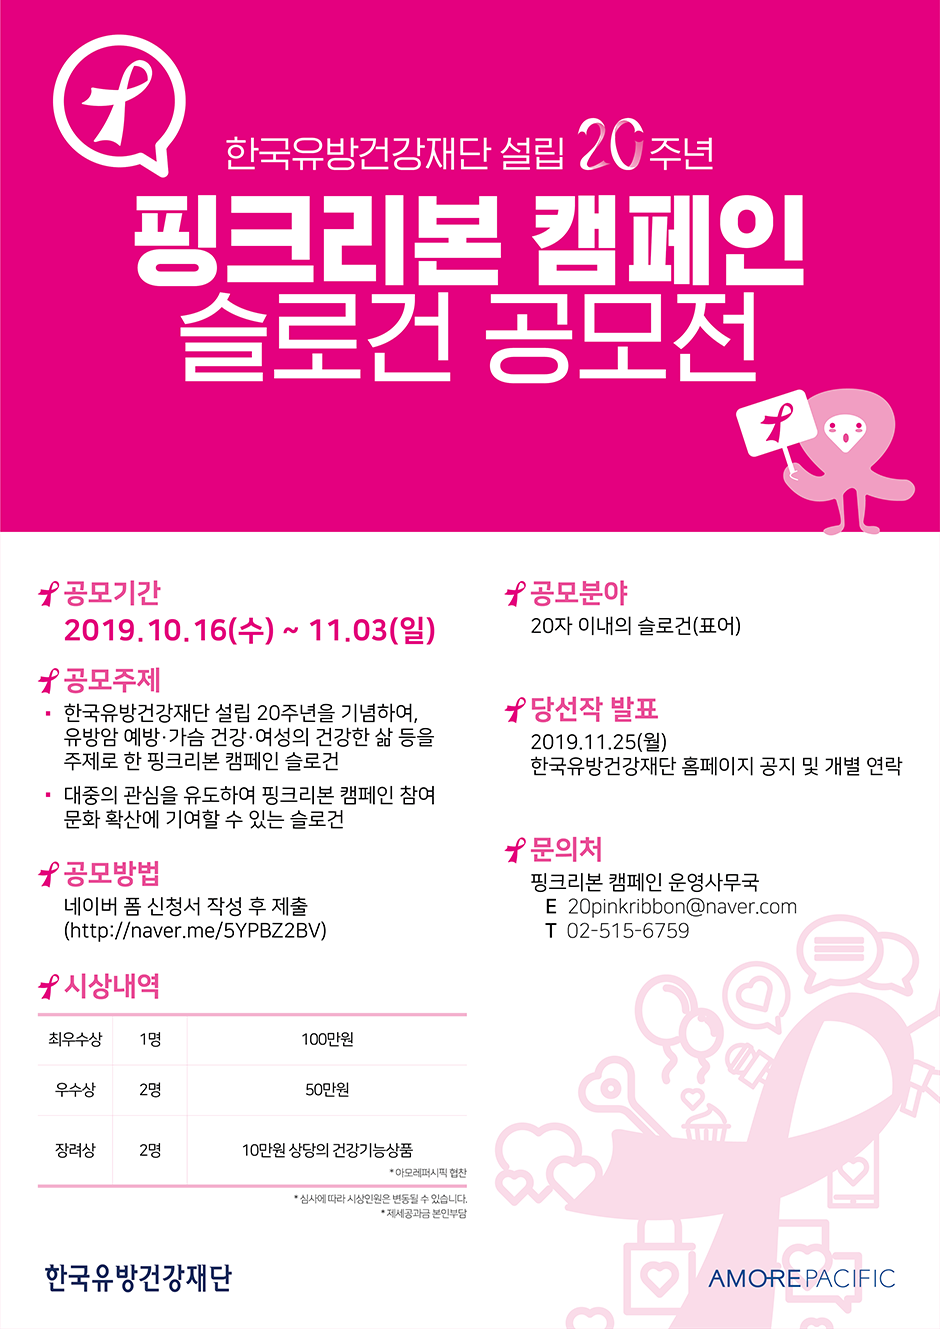 핑크리본 캠페인 슬로건 공모전 개최